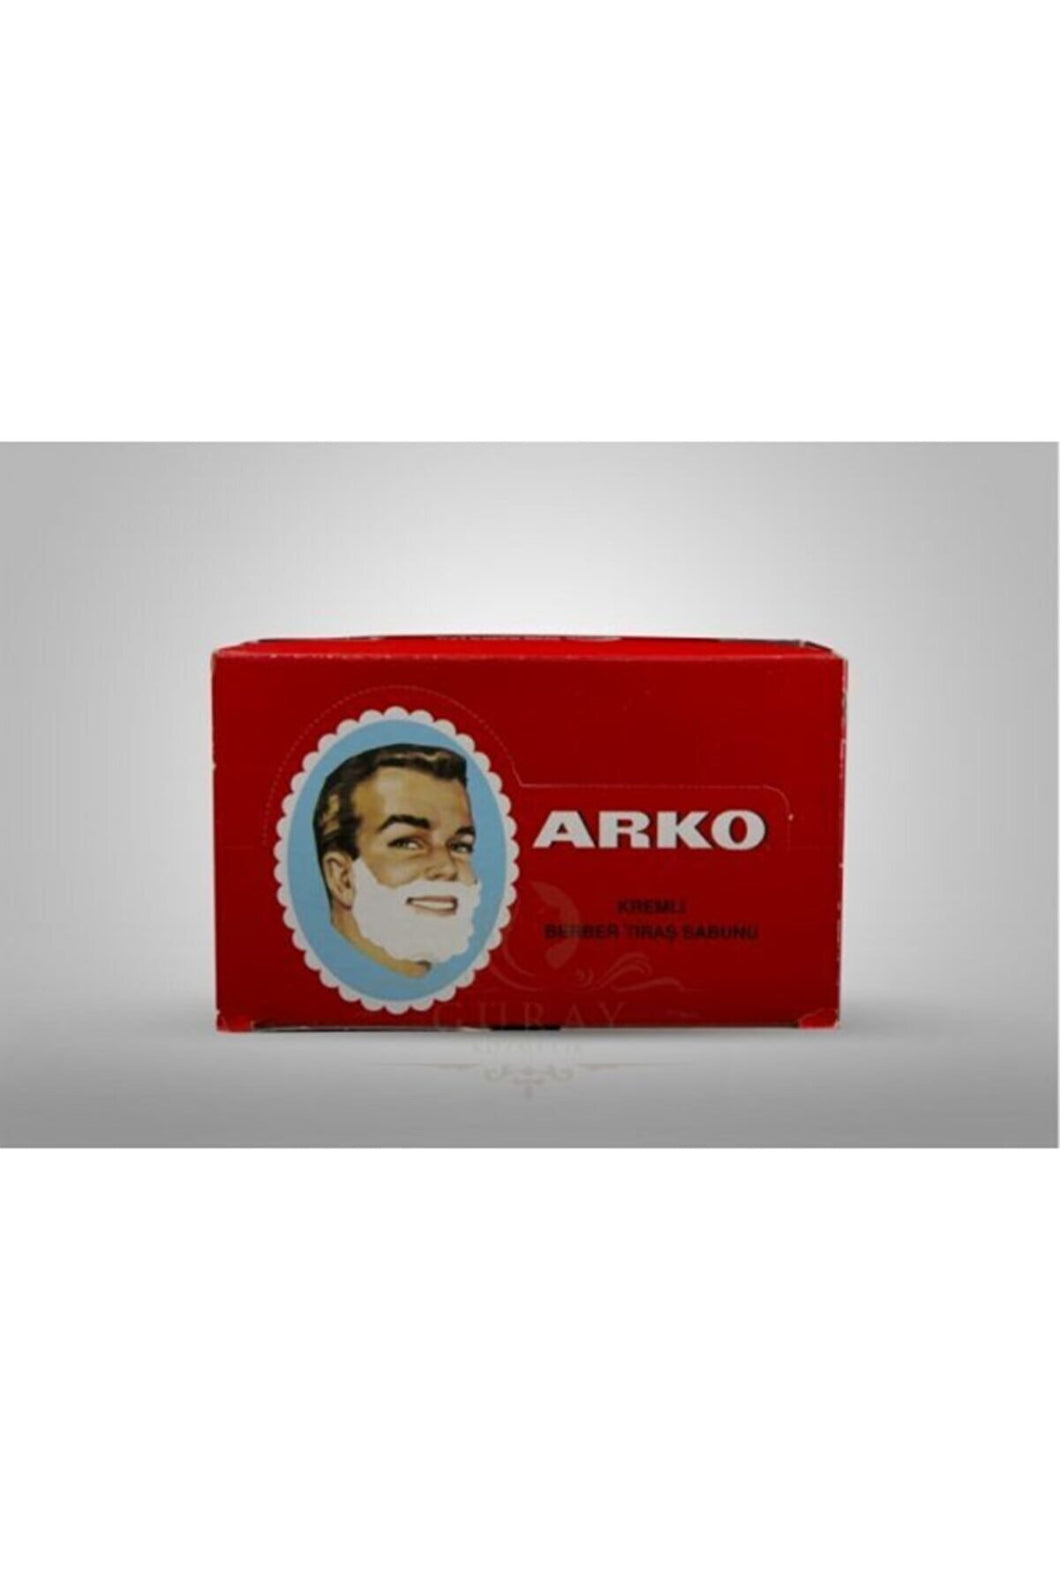 Arko Shaving Soap